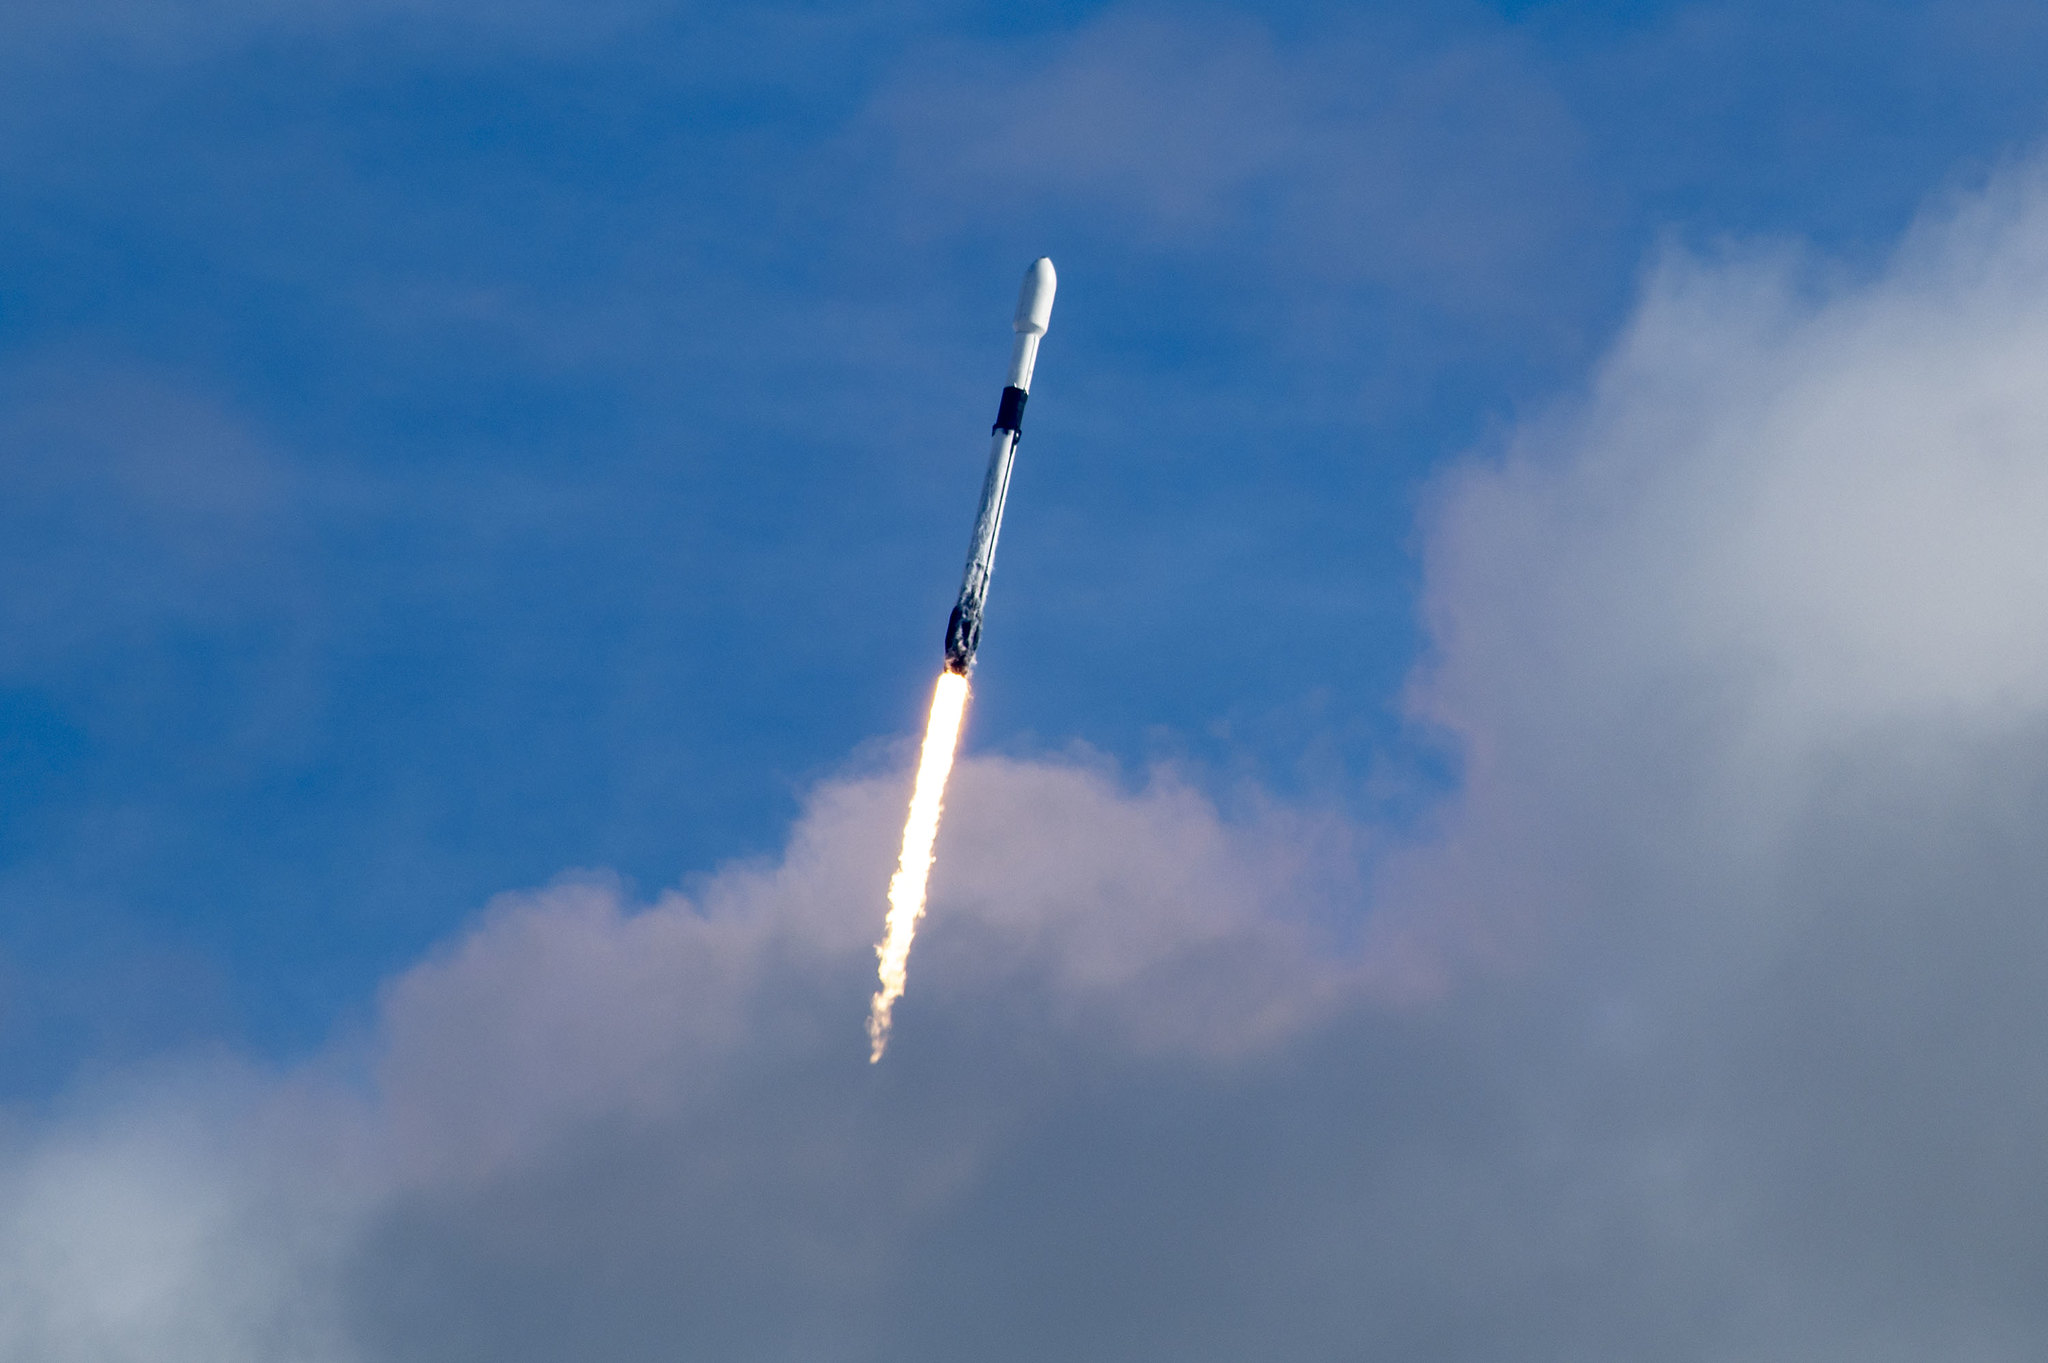 Как выглядел старт рекордной миссии Transporter-1 от SpaceX